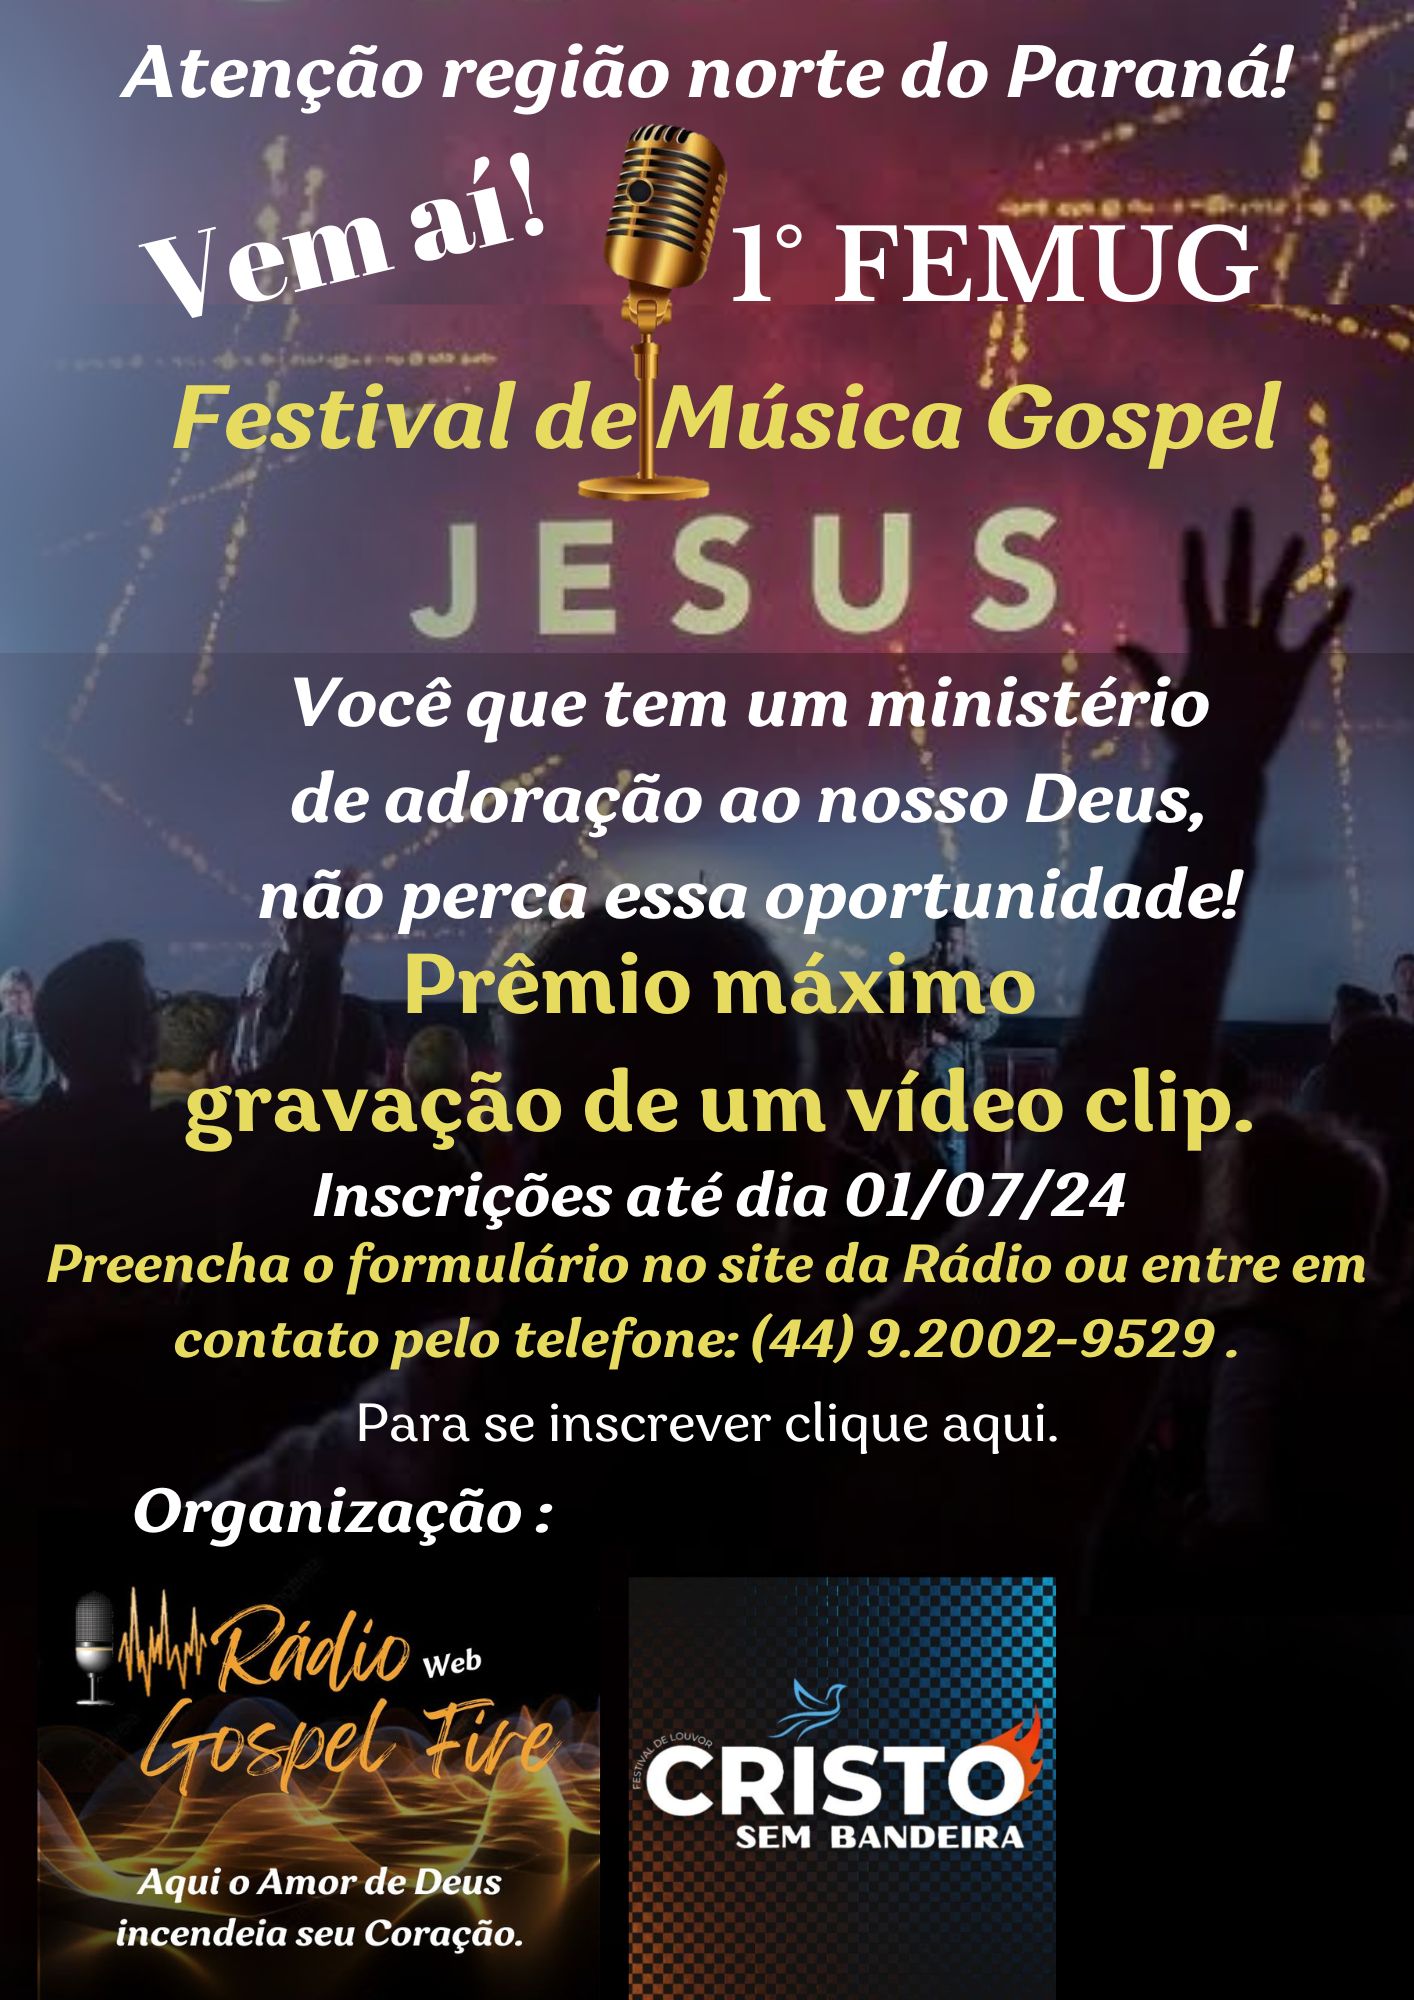 Publicidade 1° FEMUG - Festival de Musica Gospel